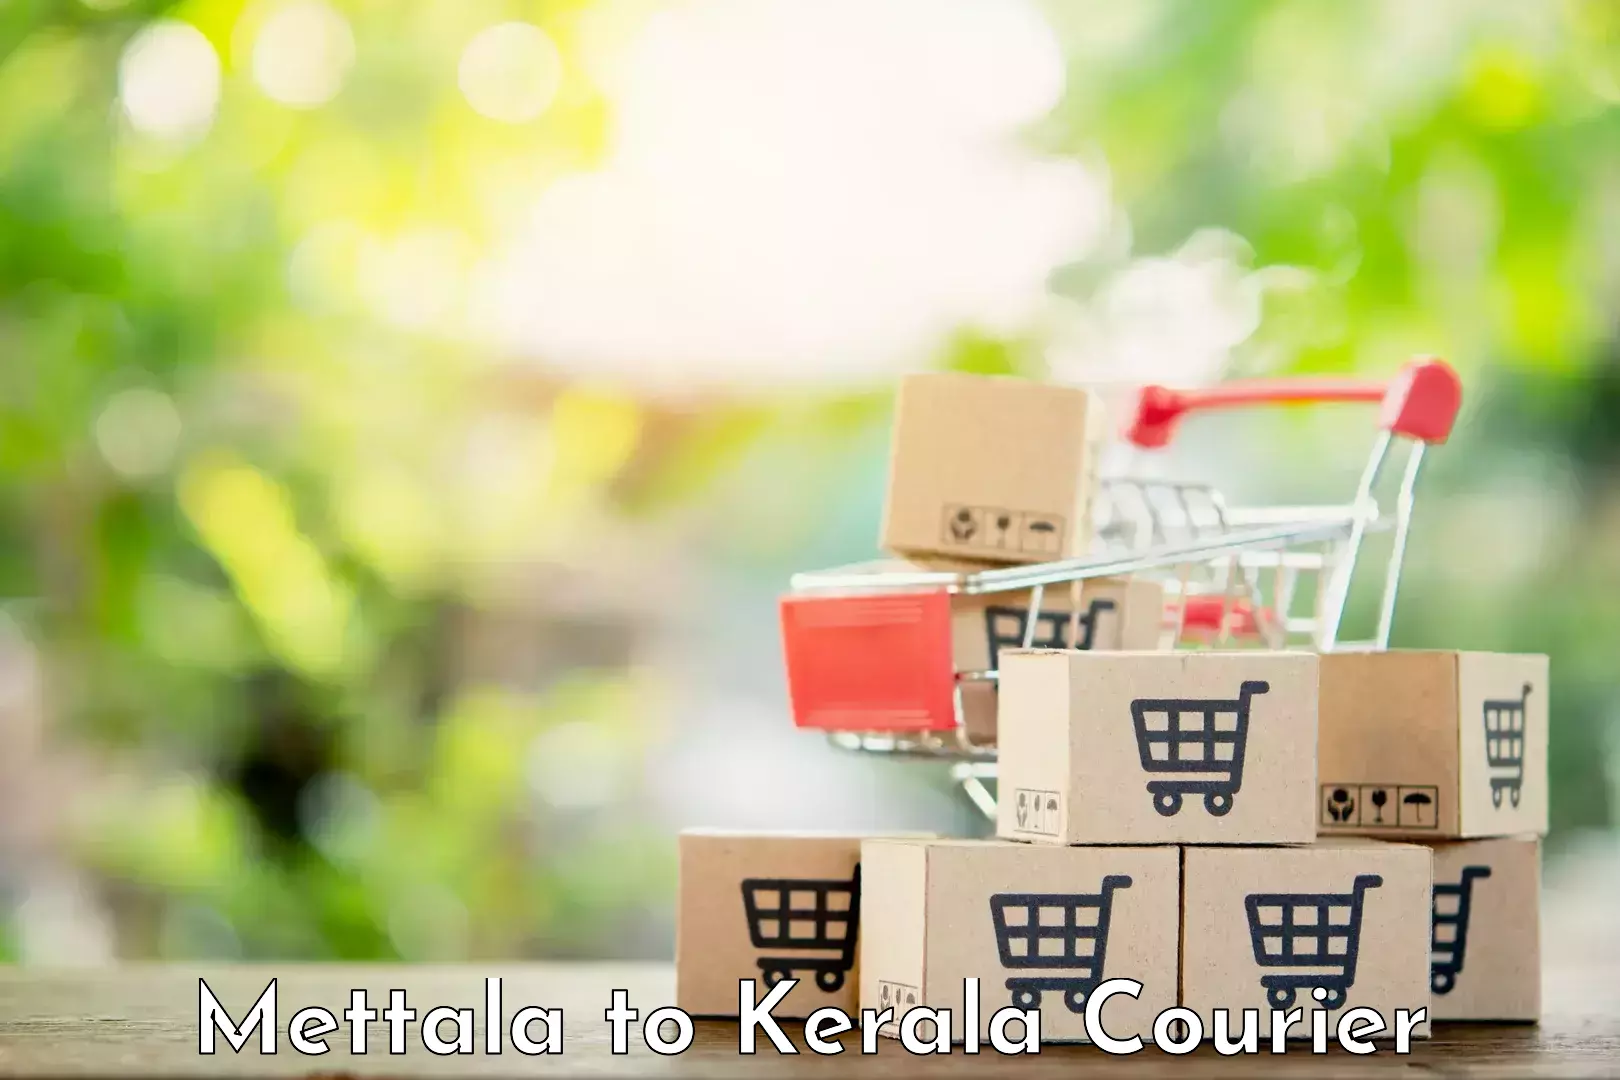 Urgent courier needs Mettala to Ernakulam